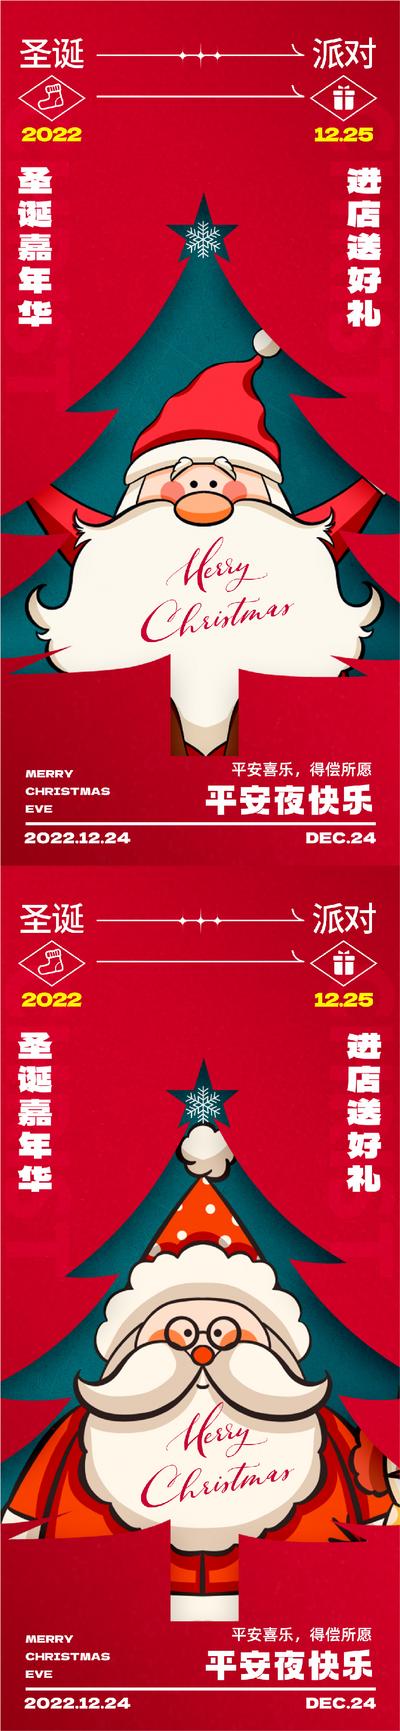 南门网 海报 公历节日 医美 圣诞节 圣诞老人 圣诞树 弥散 喜庆 插画